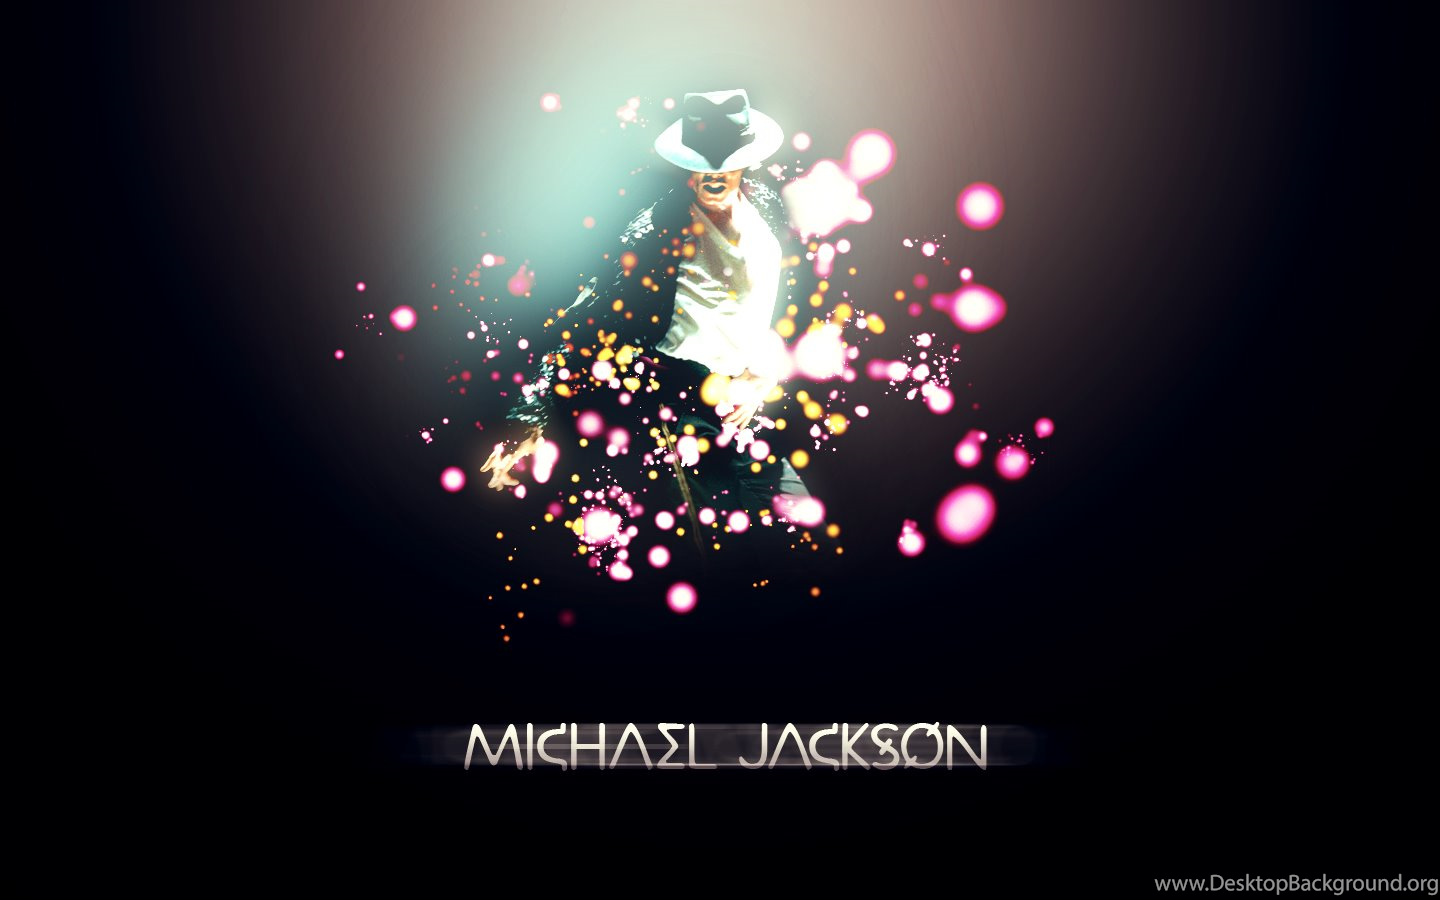 KING OF POP Michael Jackson Wallpaper Fanpop Desktop Background